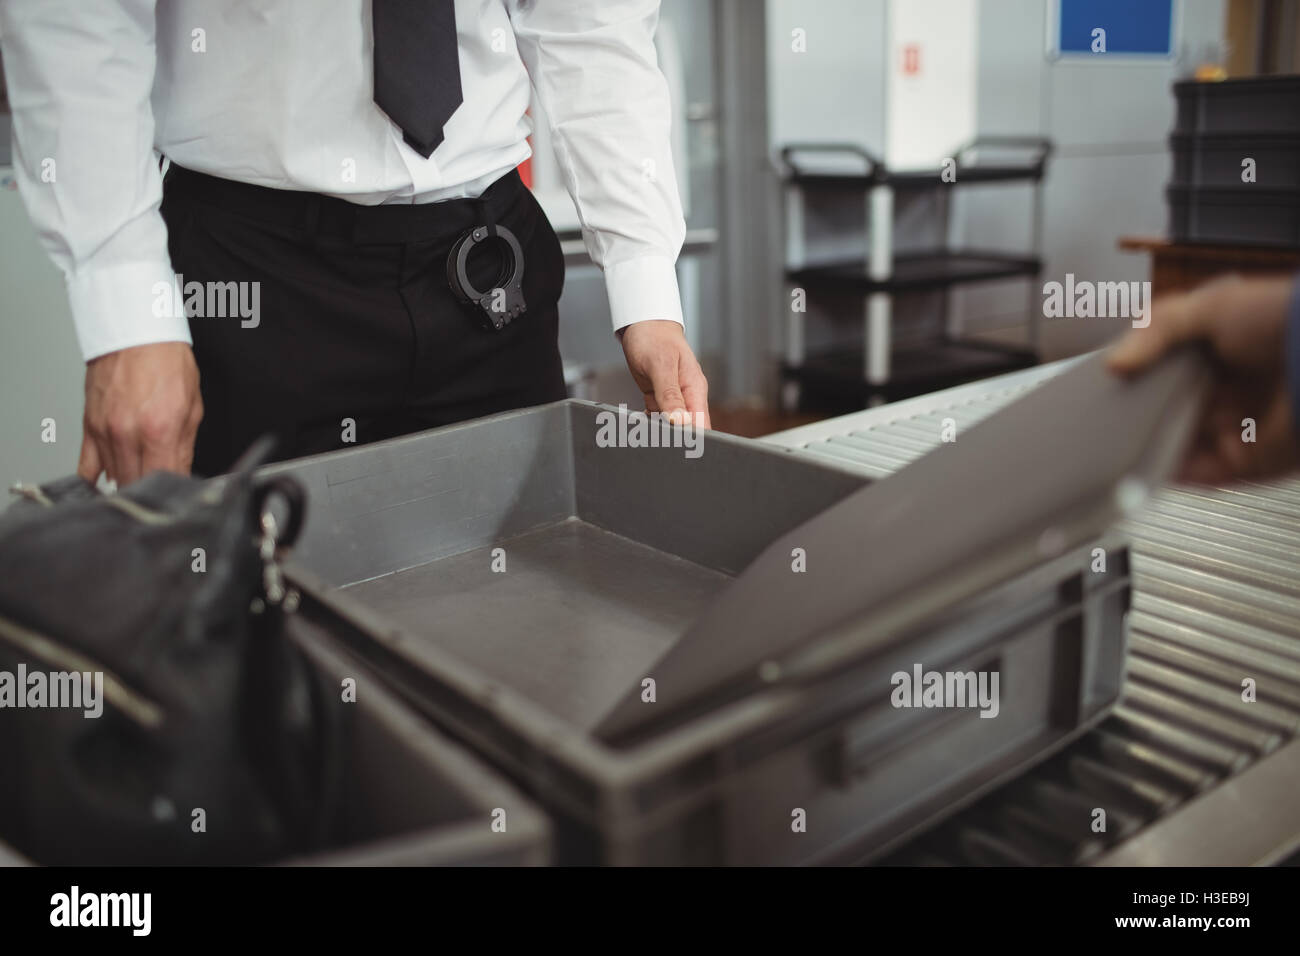 L'uomo mettendo laptop nel vassoio per il controllo di sicurezza Foto Stock